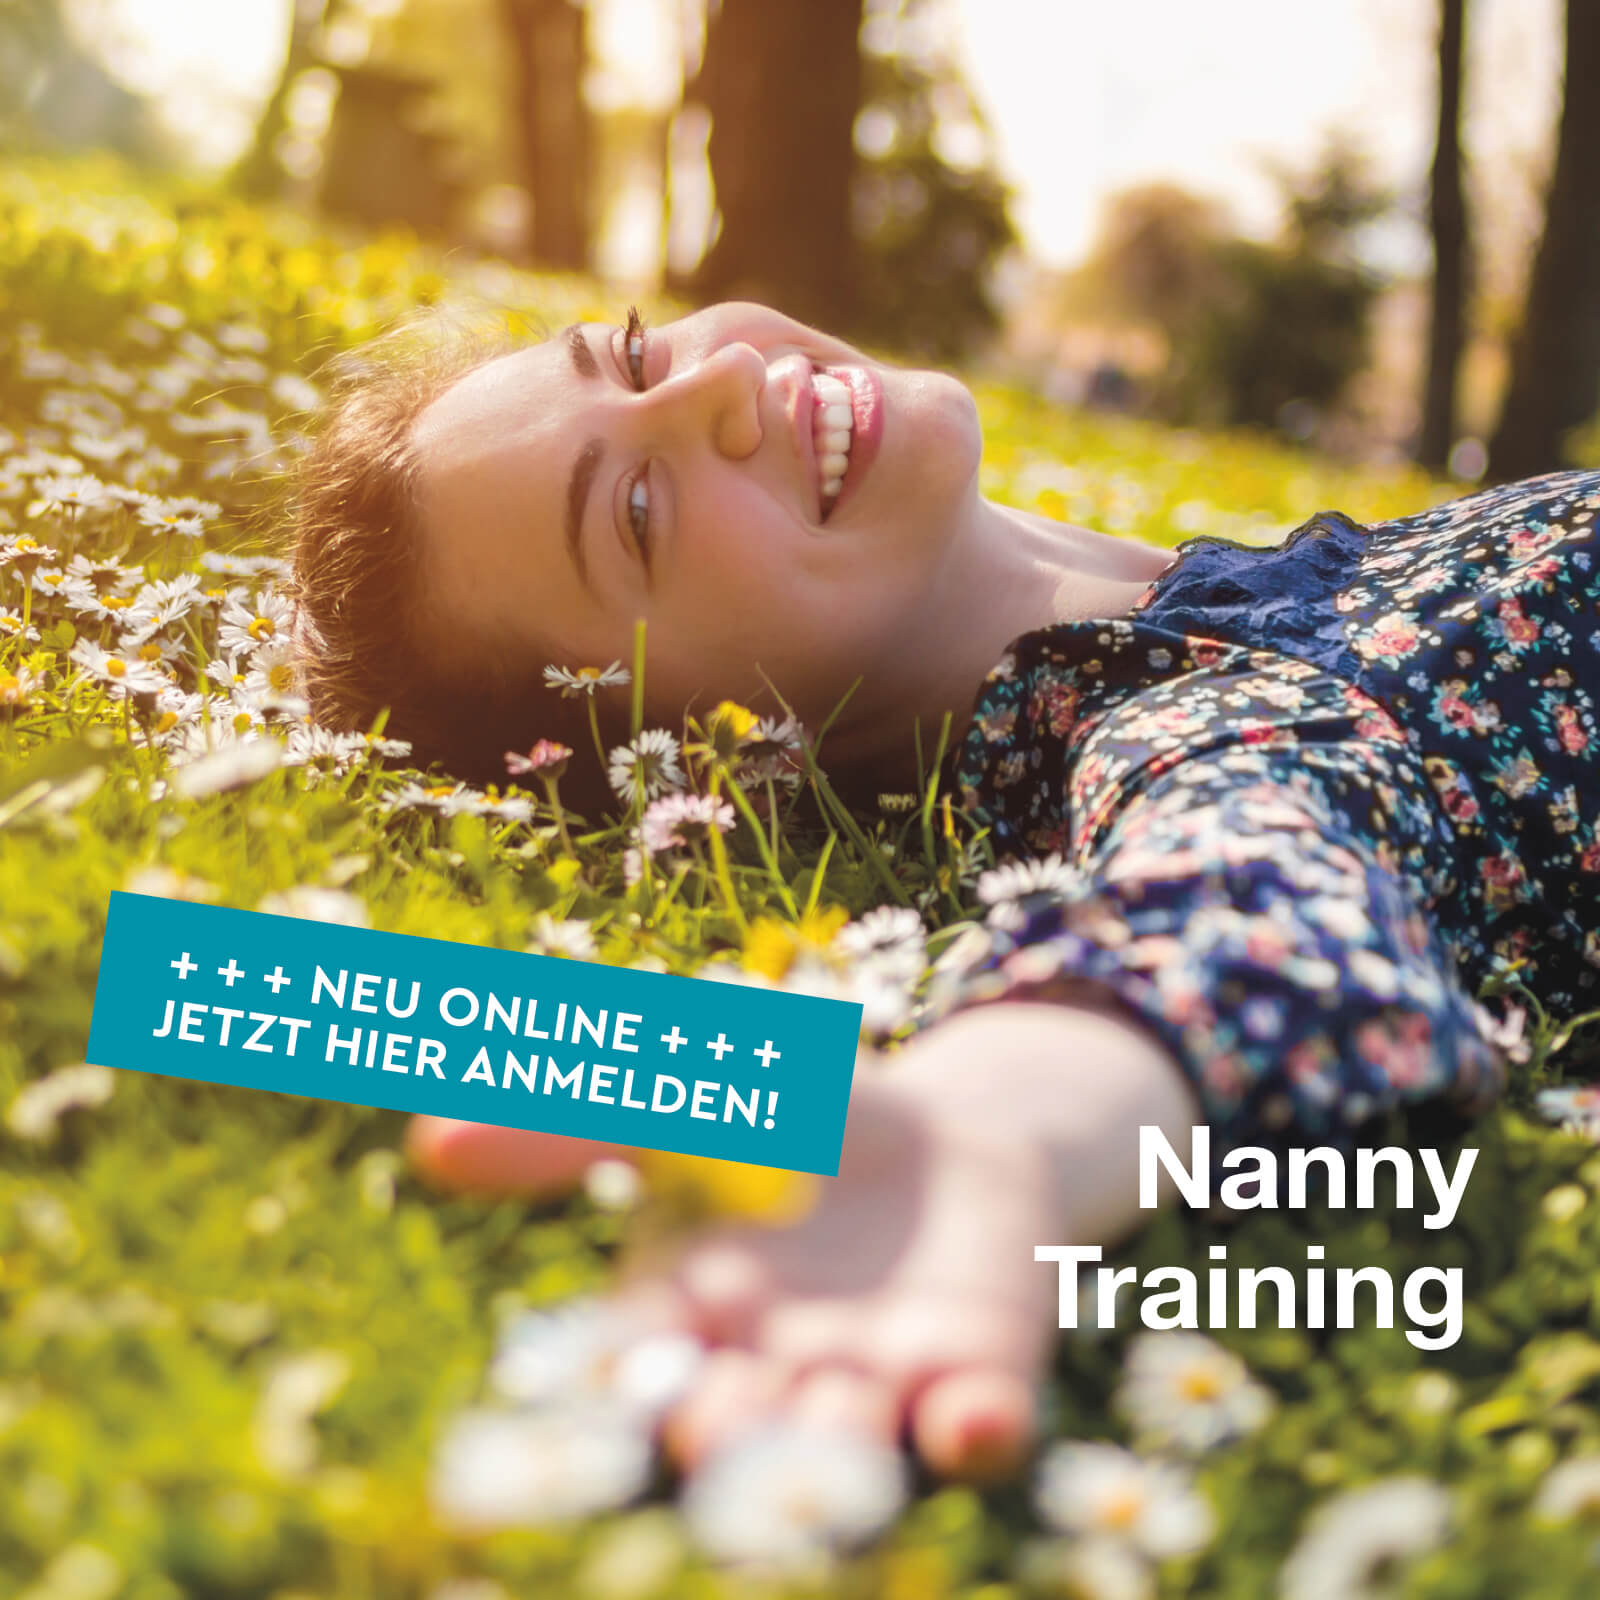 N4yK Academy – Online Training, Weiterbildung und Coachings für Nannies. Jetzt online anmelden.